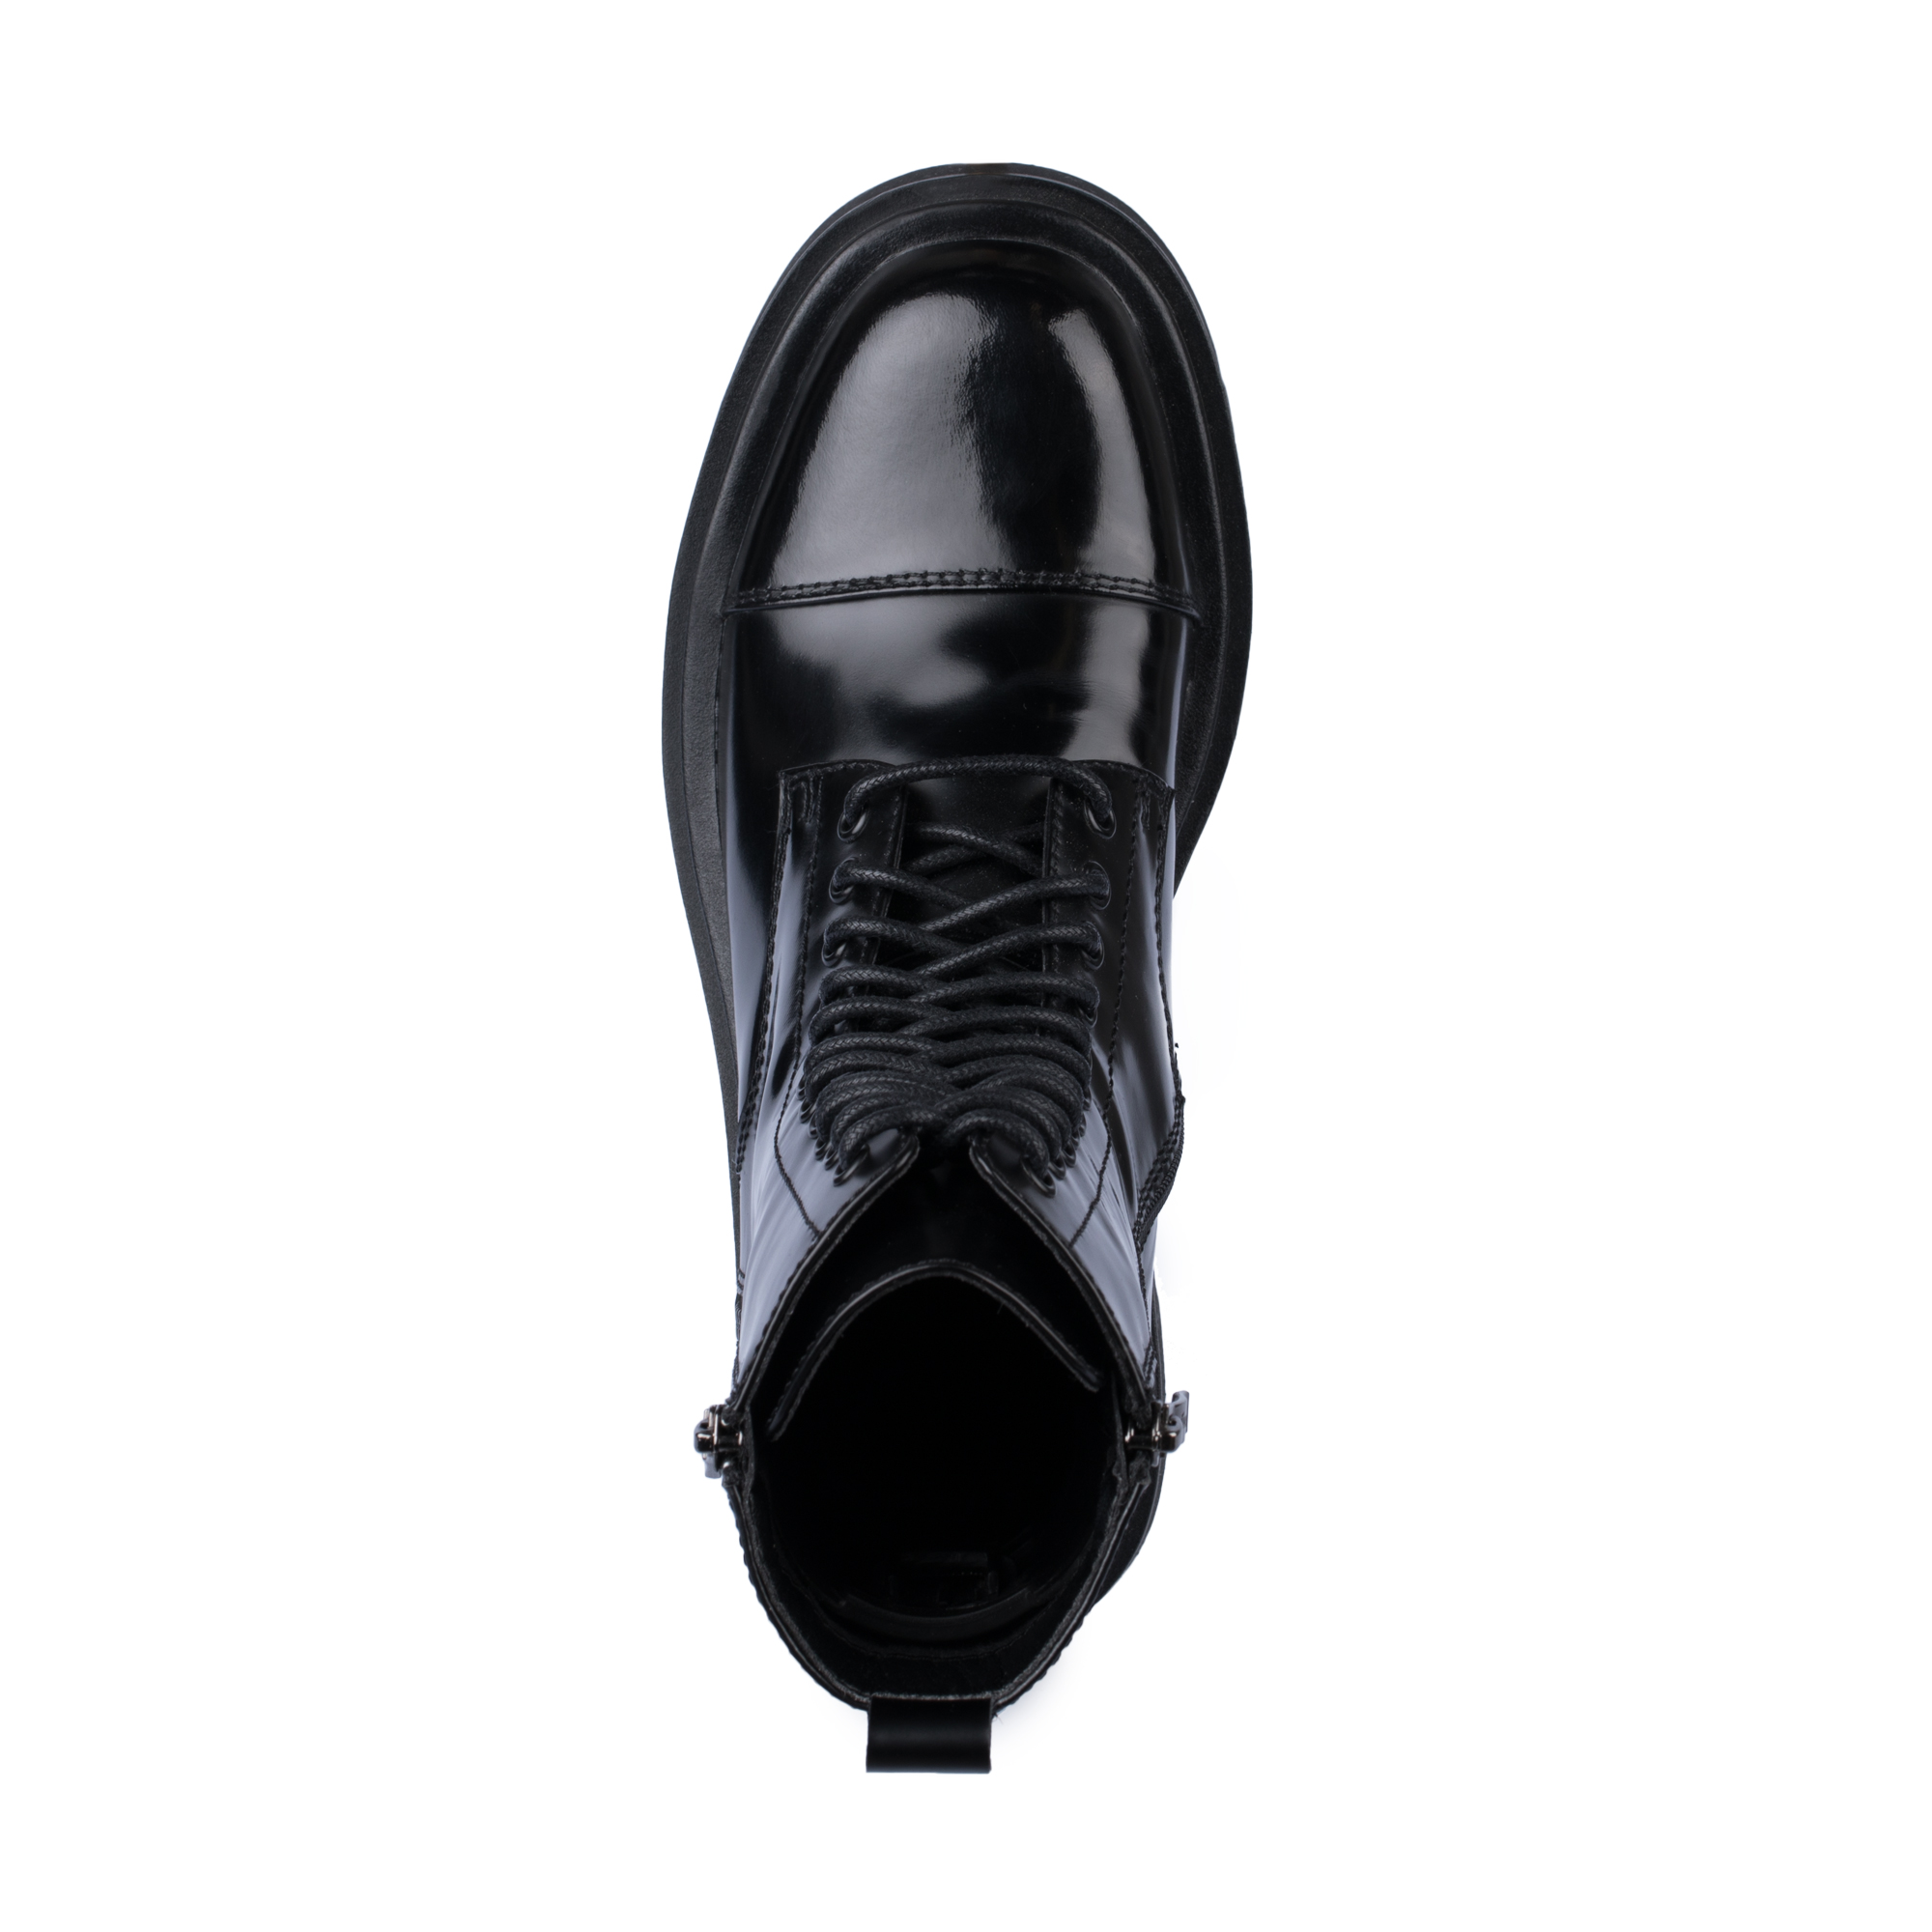 Ботинки Thomas Munz 233-895A-2602, цвет черный, размер 40 - фото 5